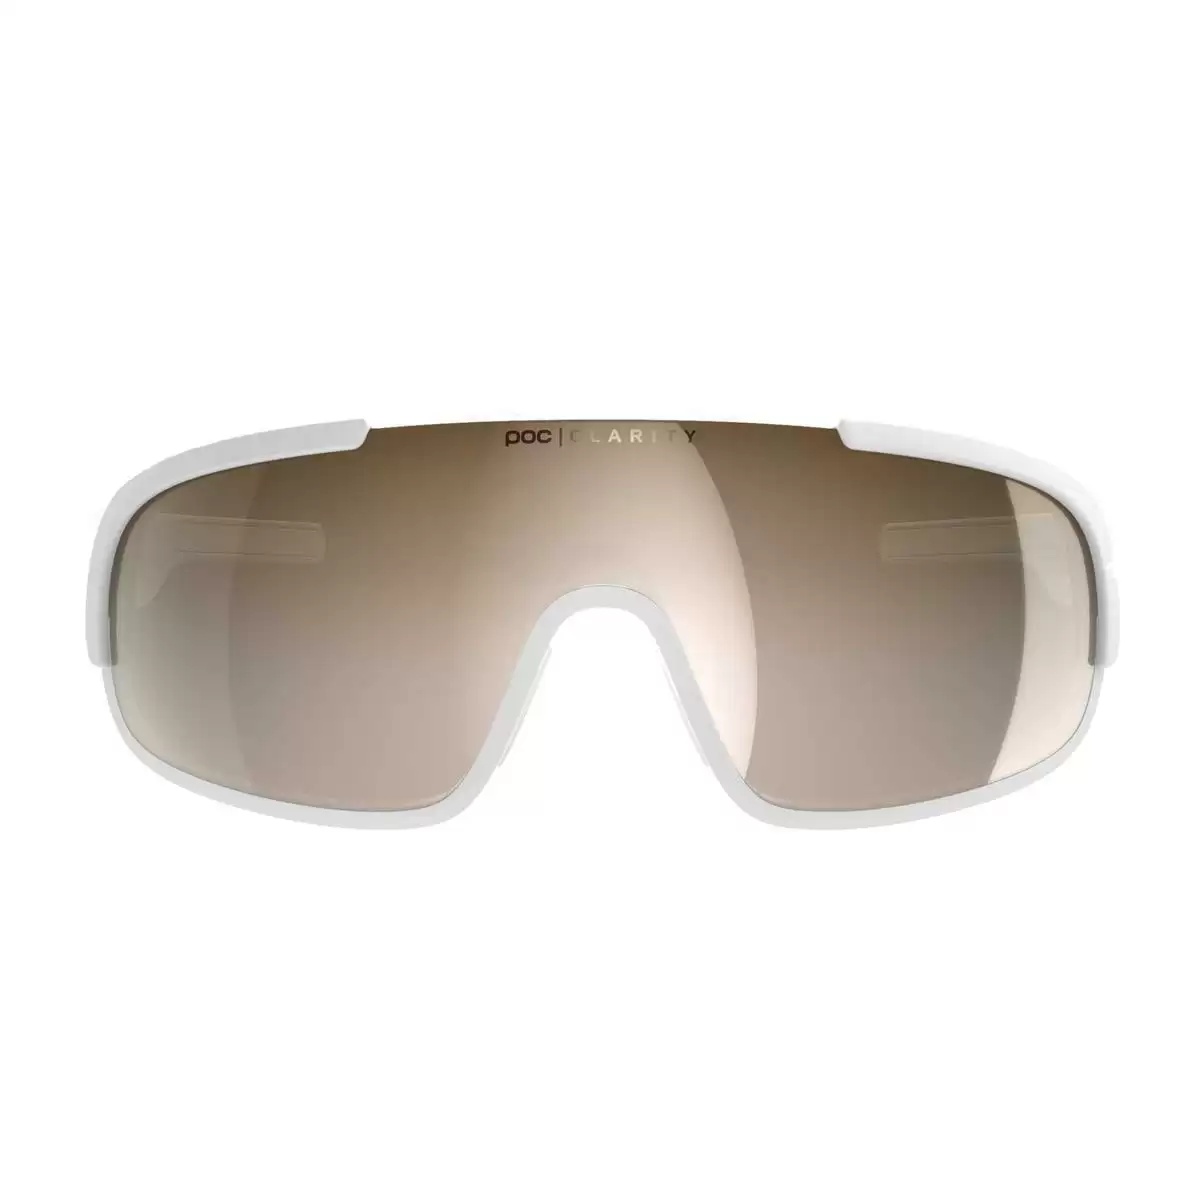 Crave gafas de sol blanco claridad lente marrón #3